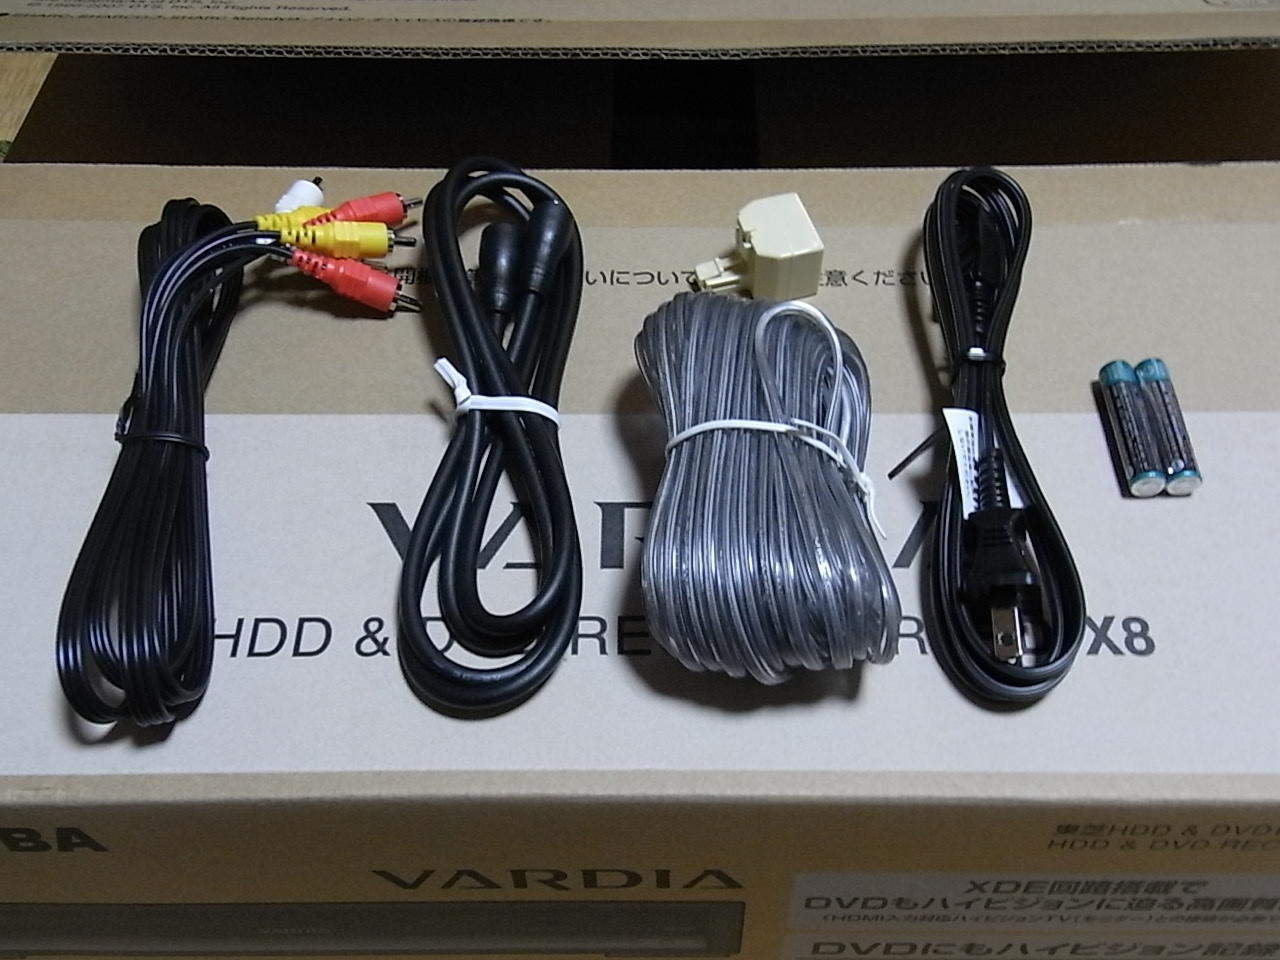 東芝 HDD/DVDレコーダー 「VARDIA RD-X8」 レポート1: 【Digital-BAKA】